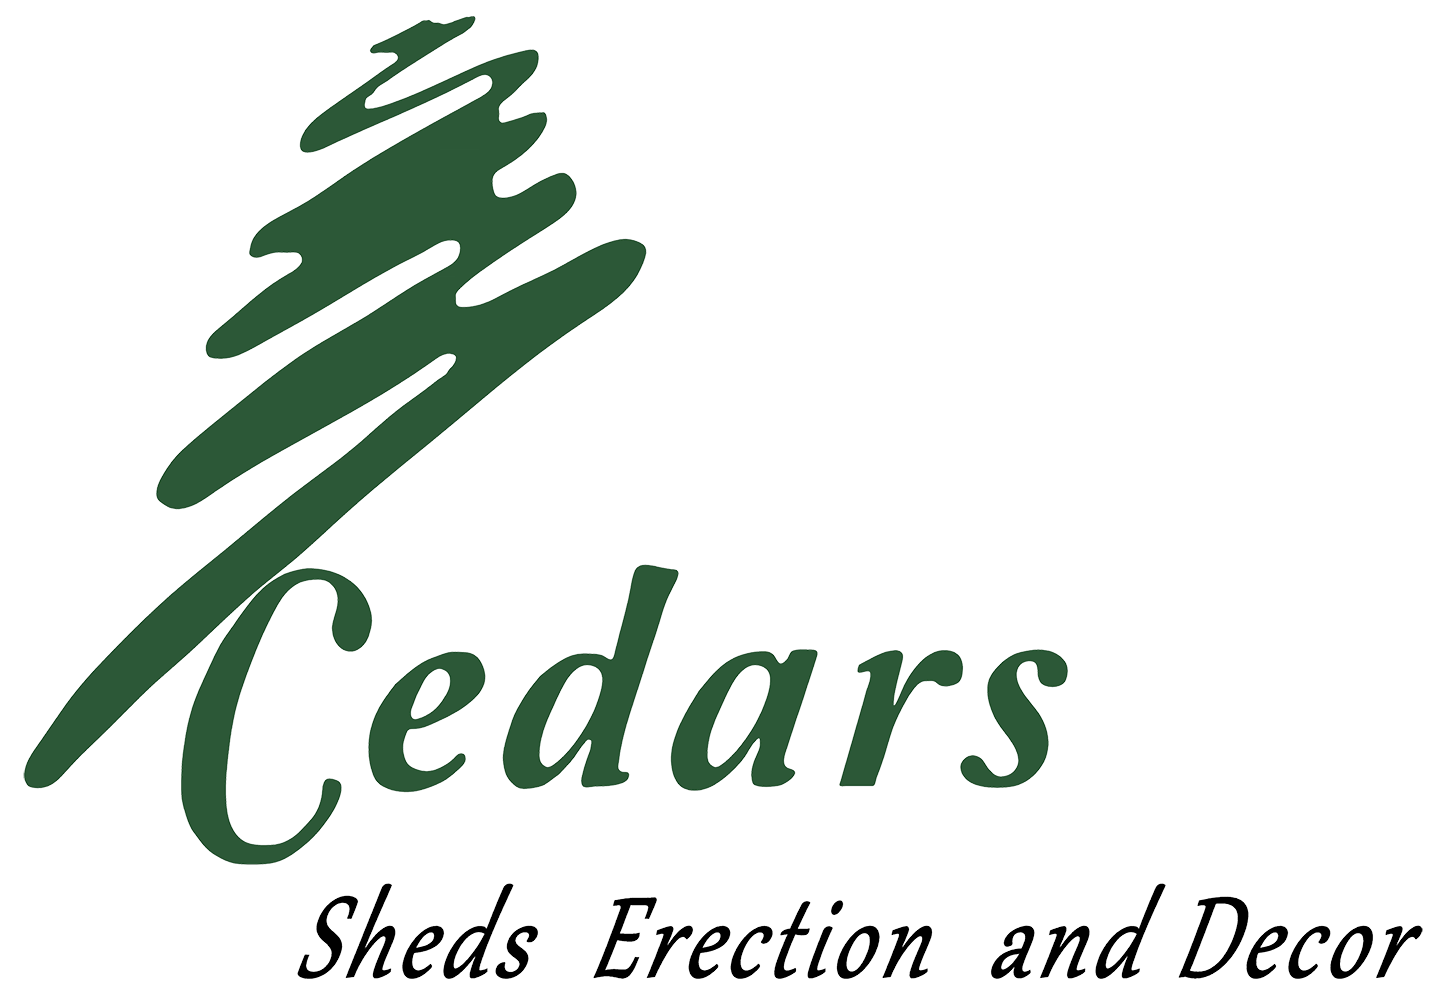 CEDARS sheds Erection & Décor